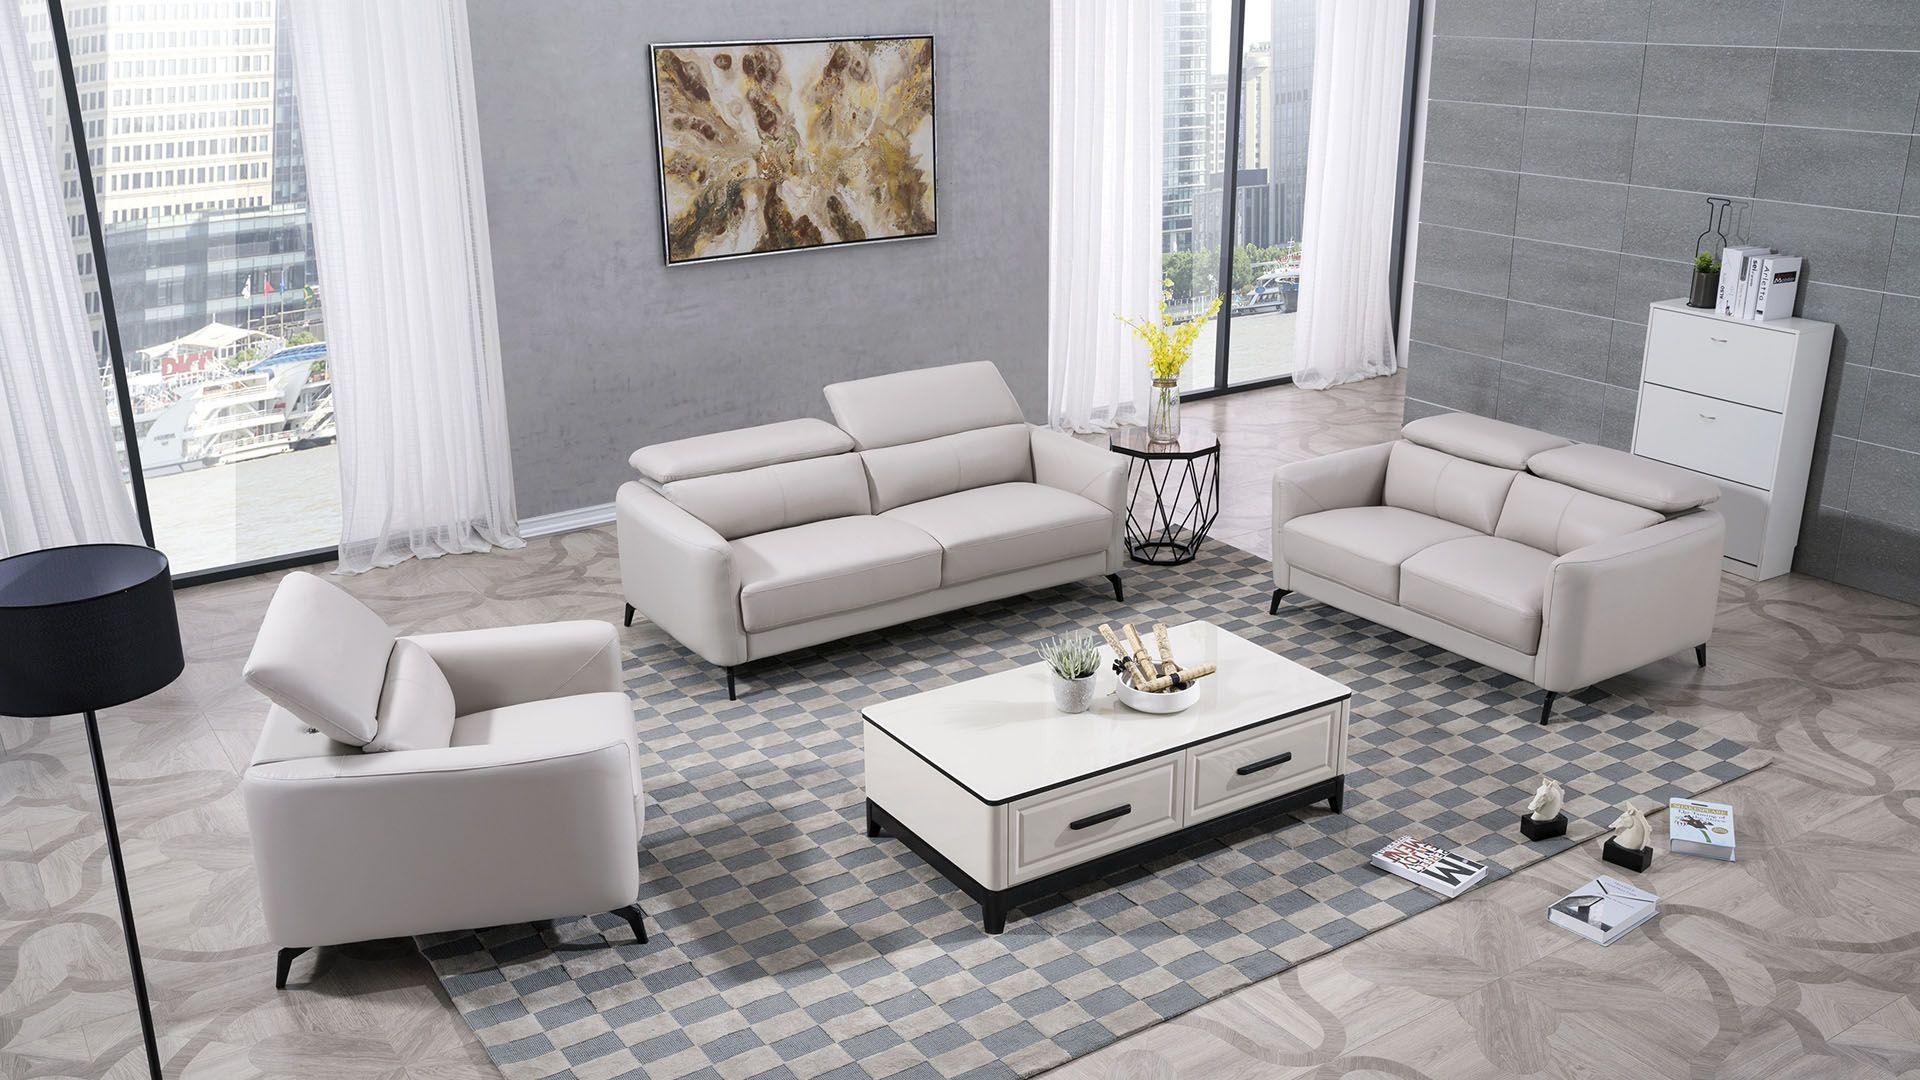 Contemporary, Modern Sofa Set EK155-LG EK155-LG-Set-3 in Light Gray Italian Leather